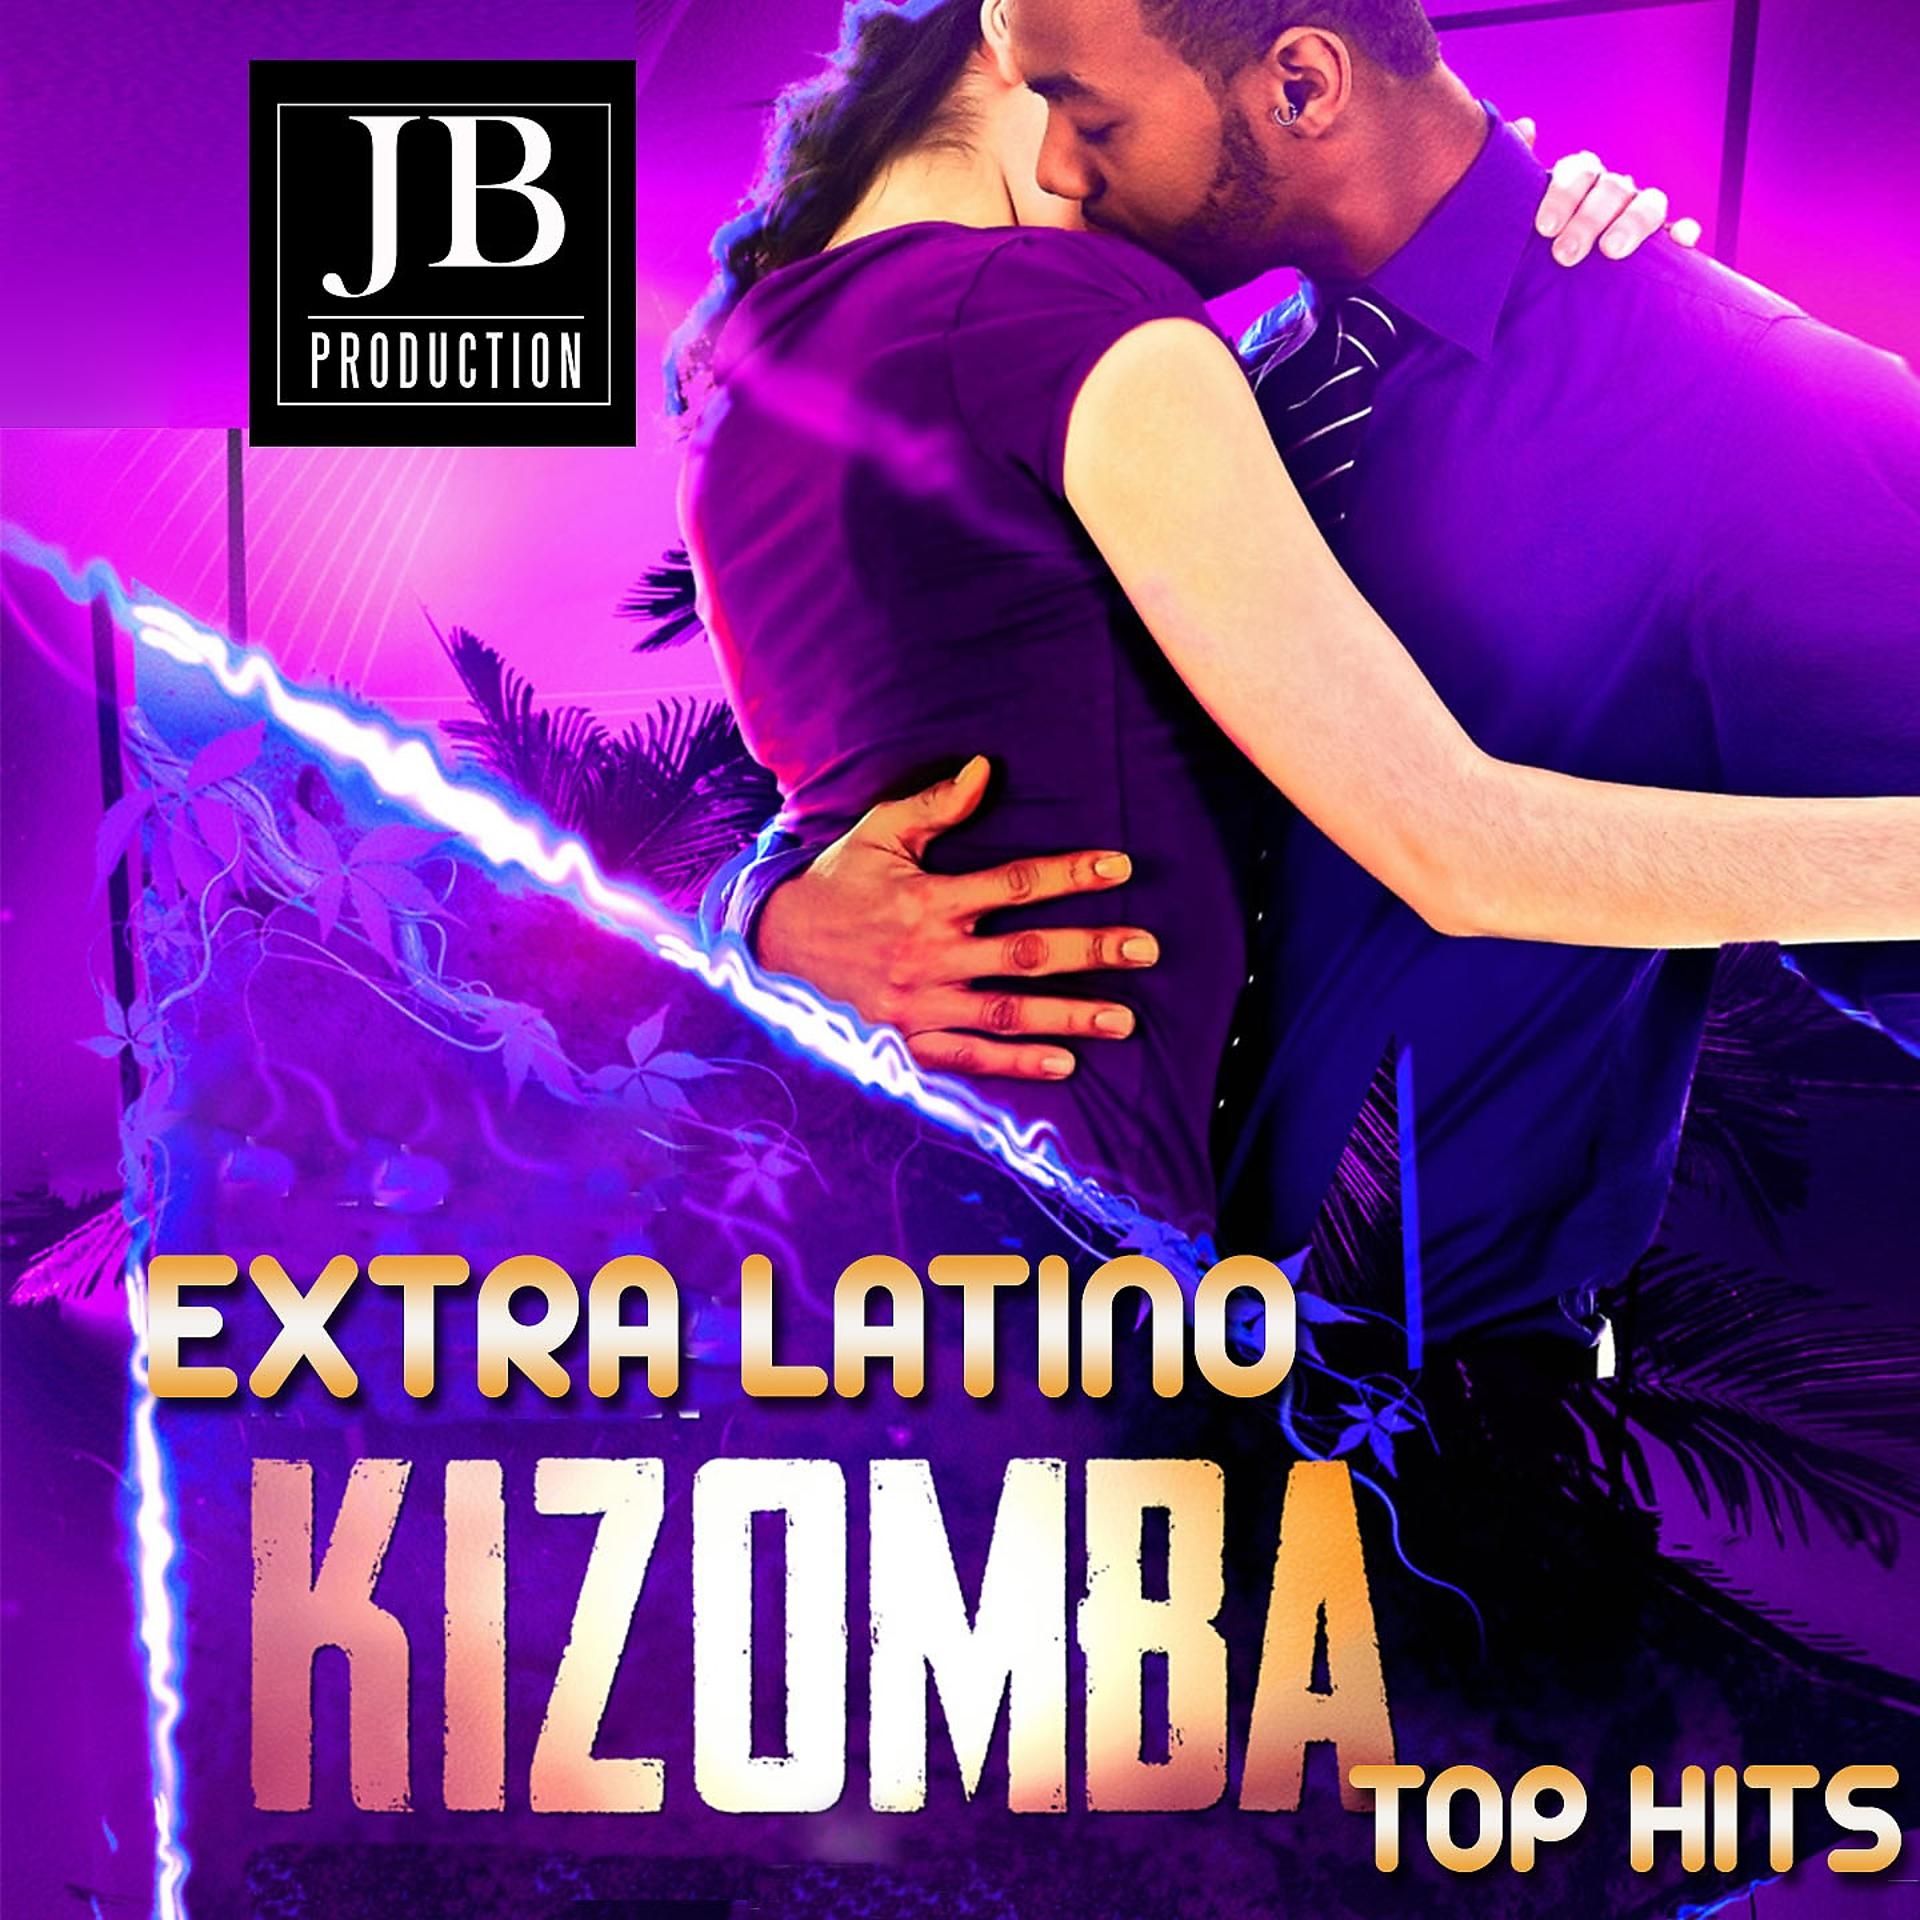 Постер альбома Kizomba